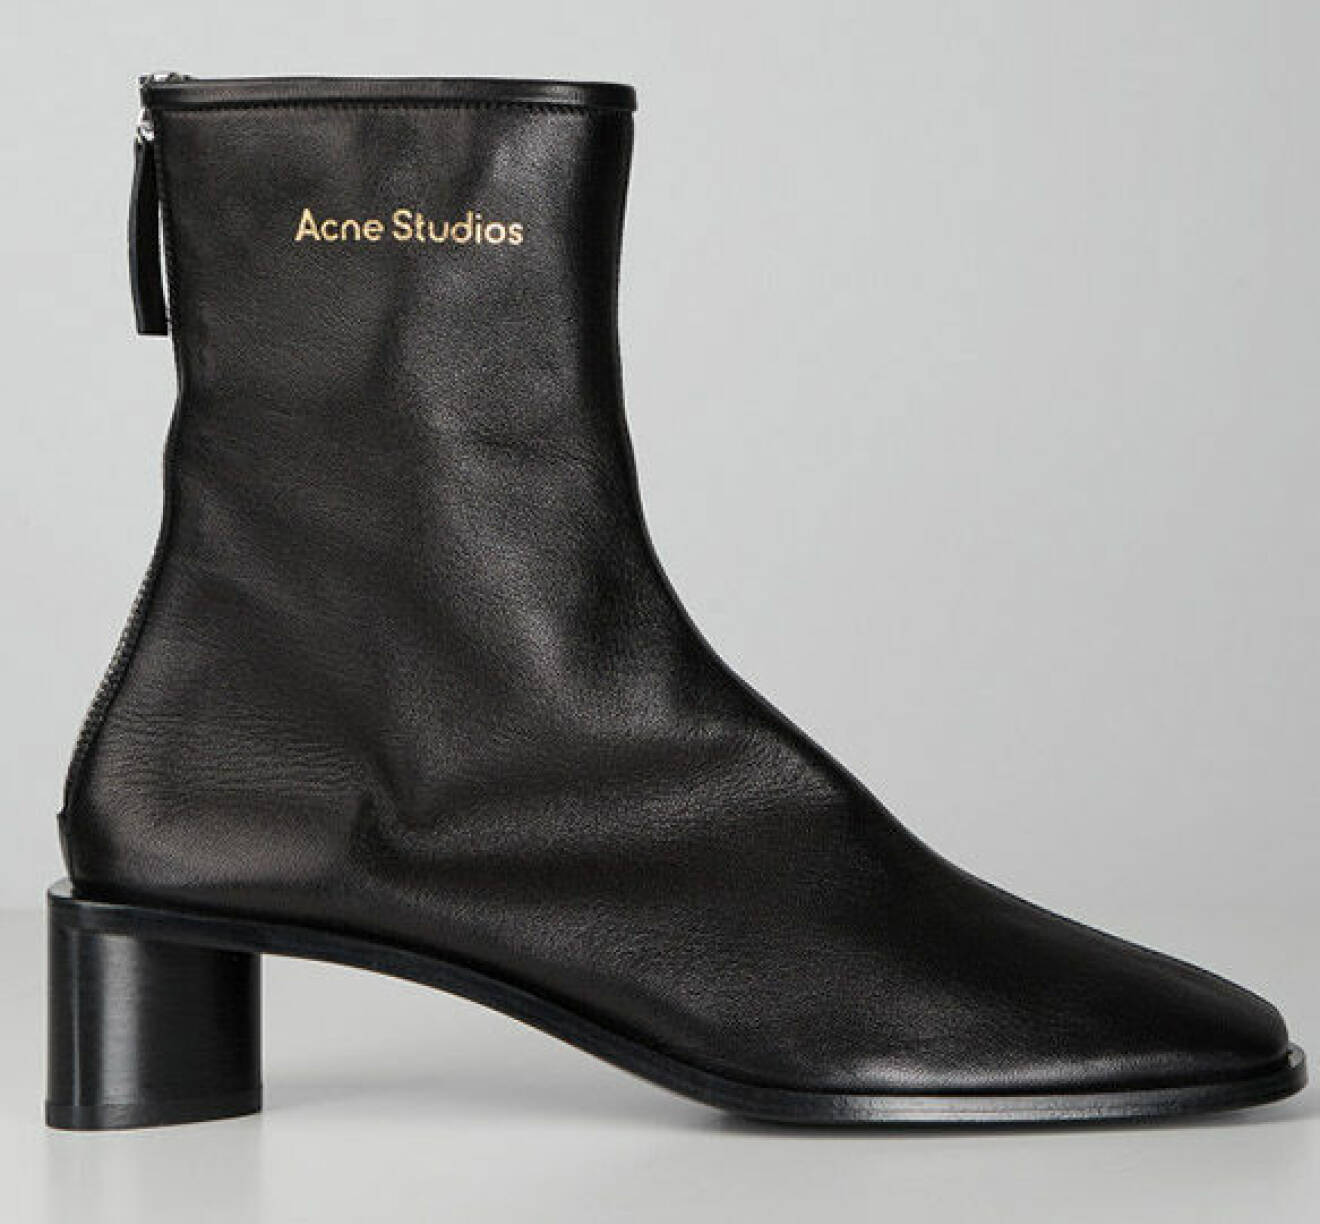 basgarderob skor: svarta ankelboots från Acne Studios